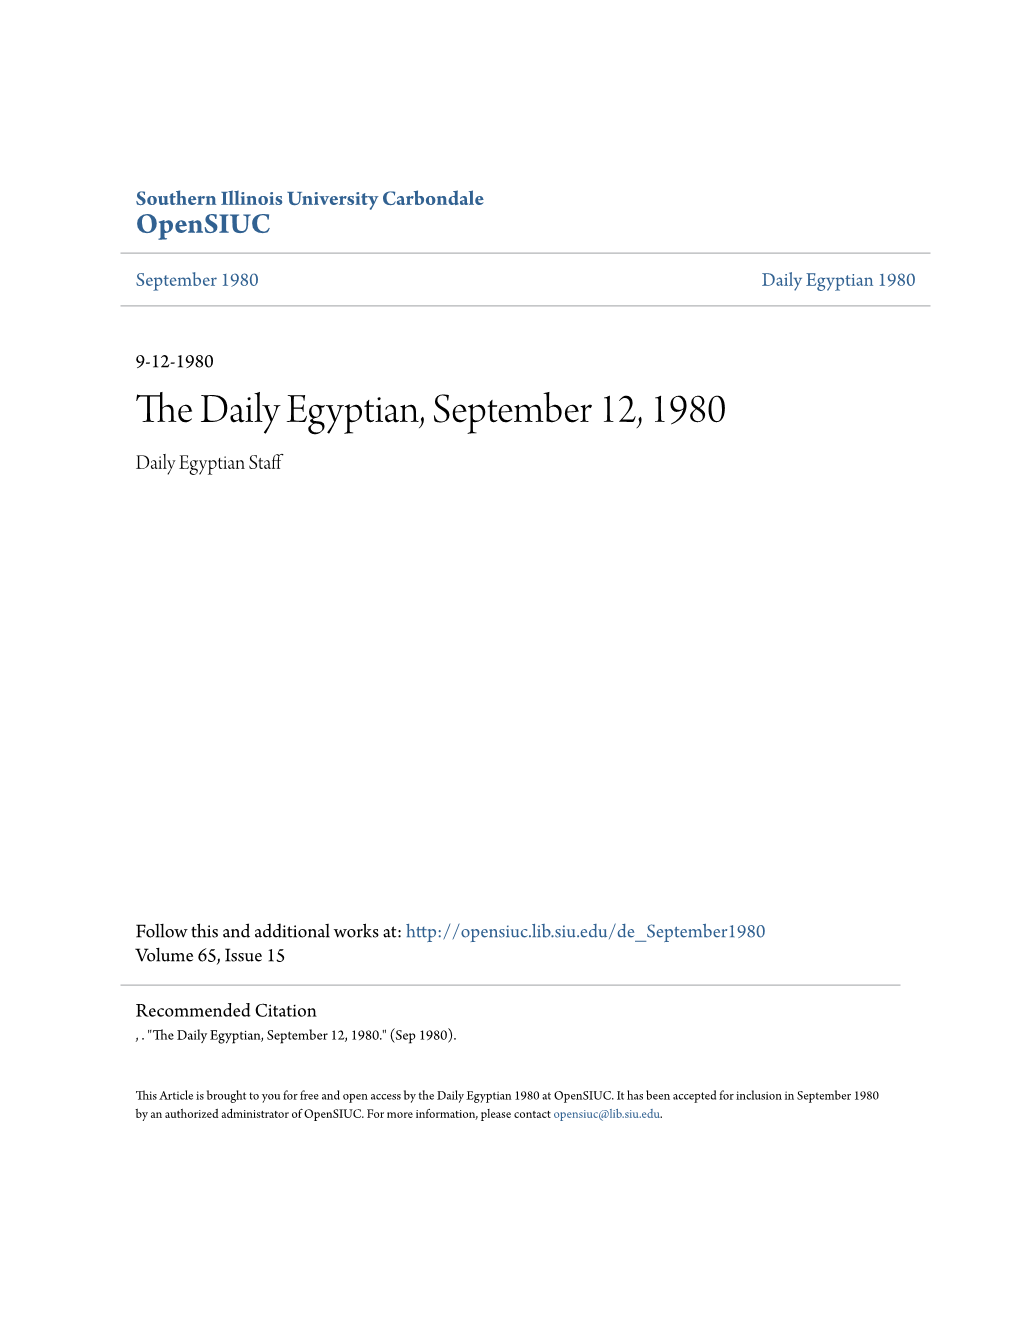 The Daily Egyptian, September 12, 1980